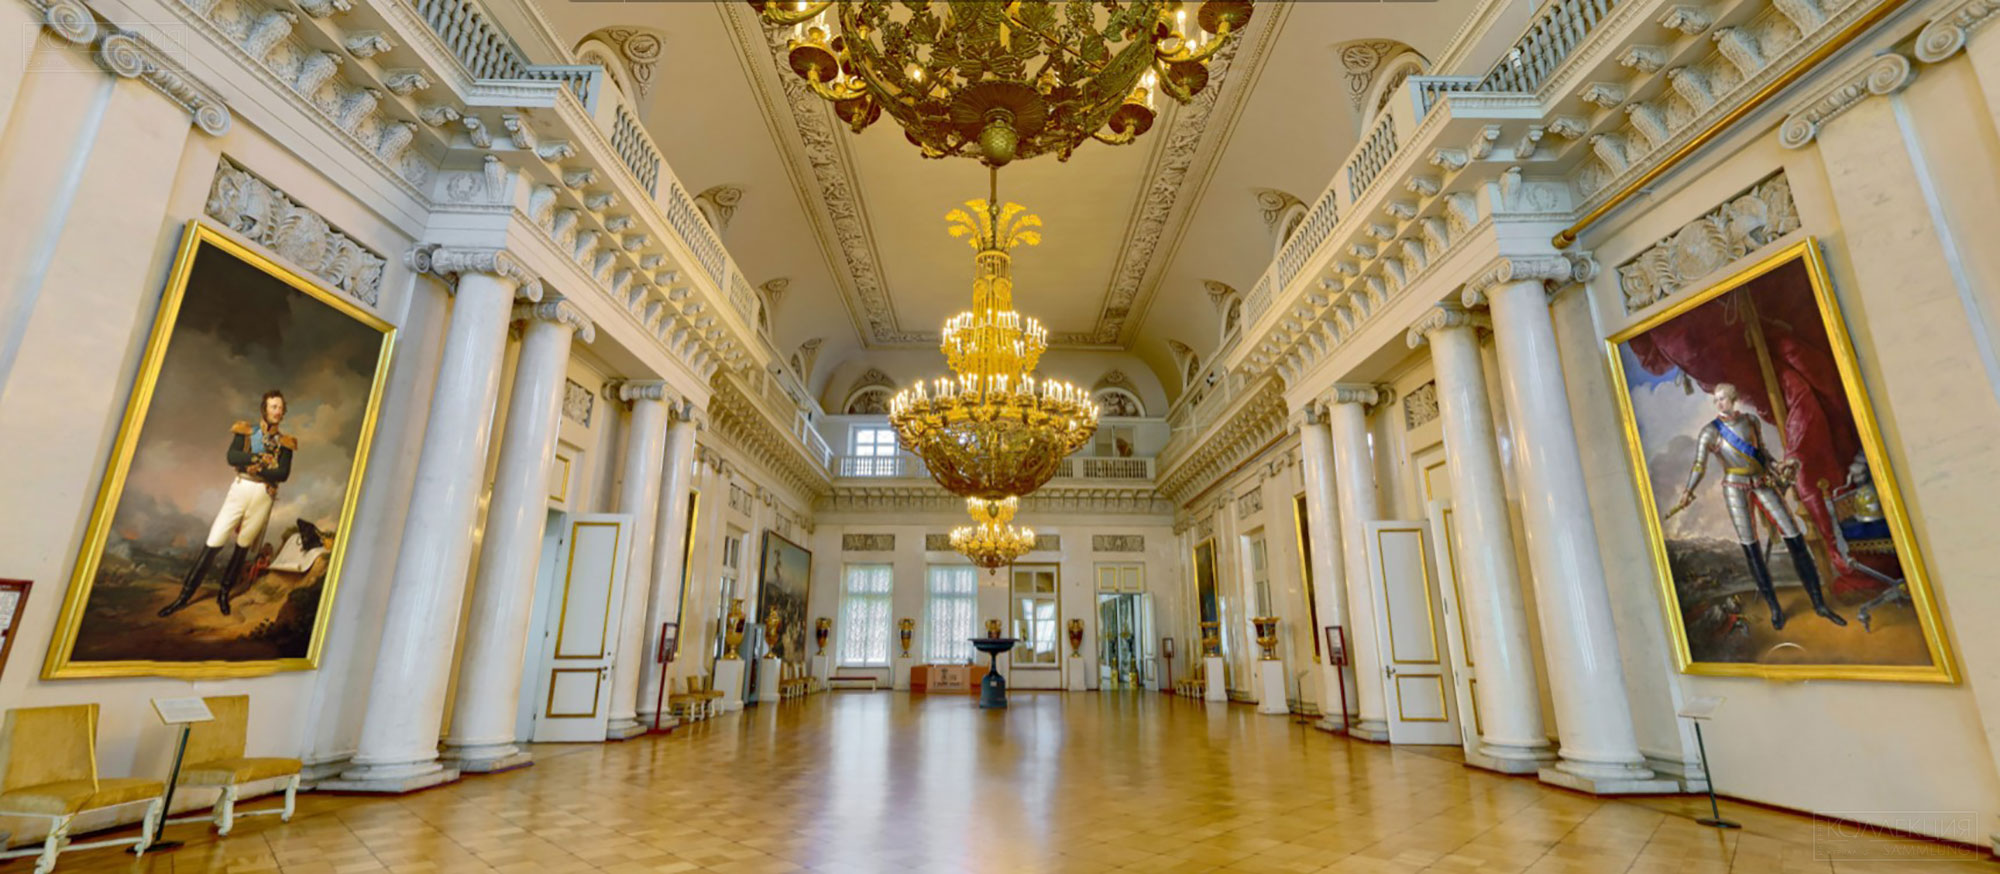 Алексеевский дворец фото интерьеров